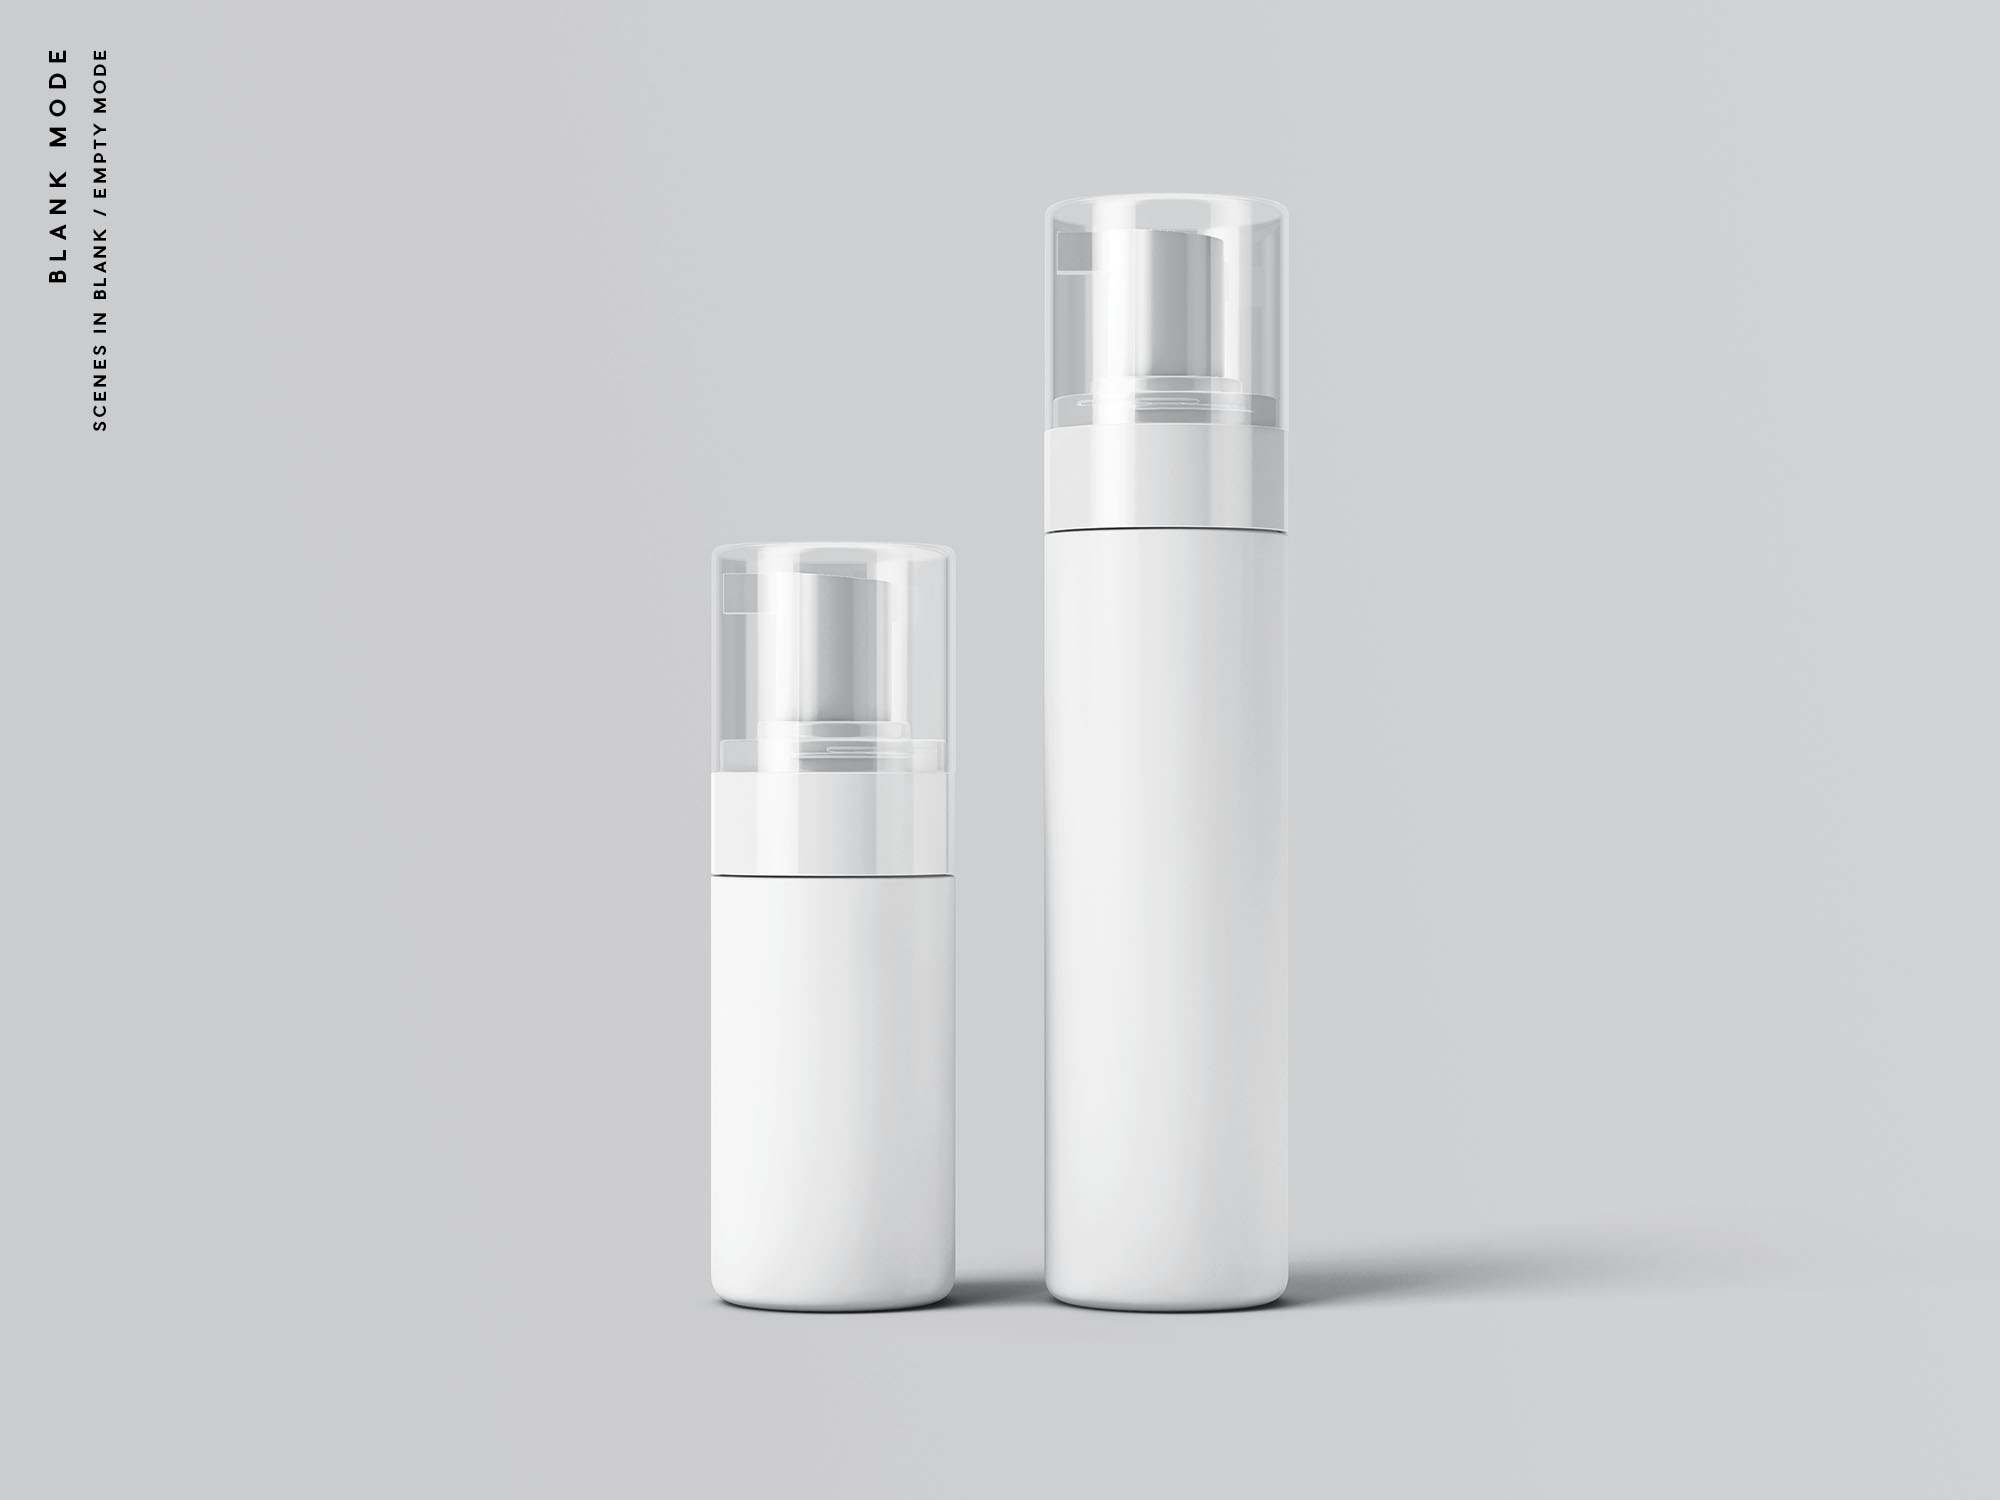 按压式化妆品护肤品瓶外观设计第一素材精选模板 Cosmetic Bottles Packaging Mockup插图(9)